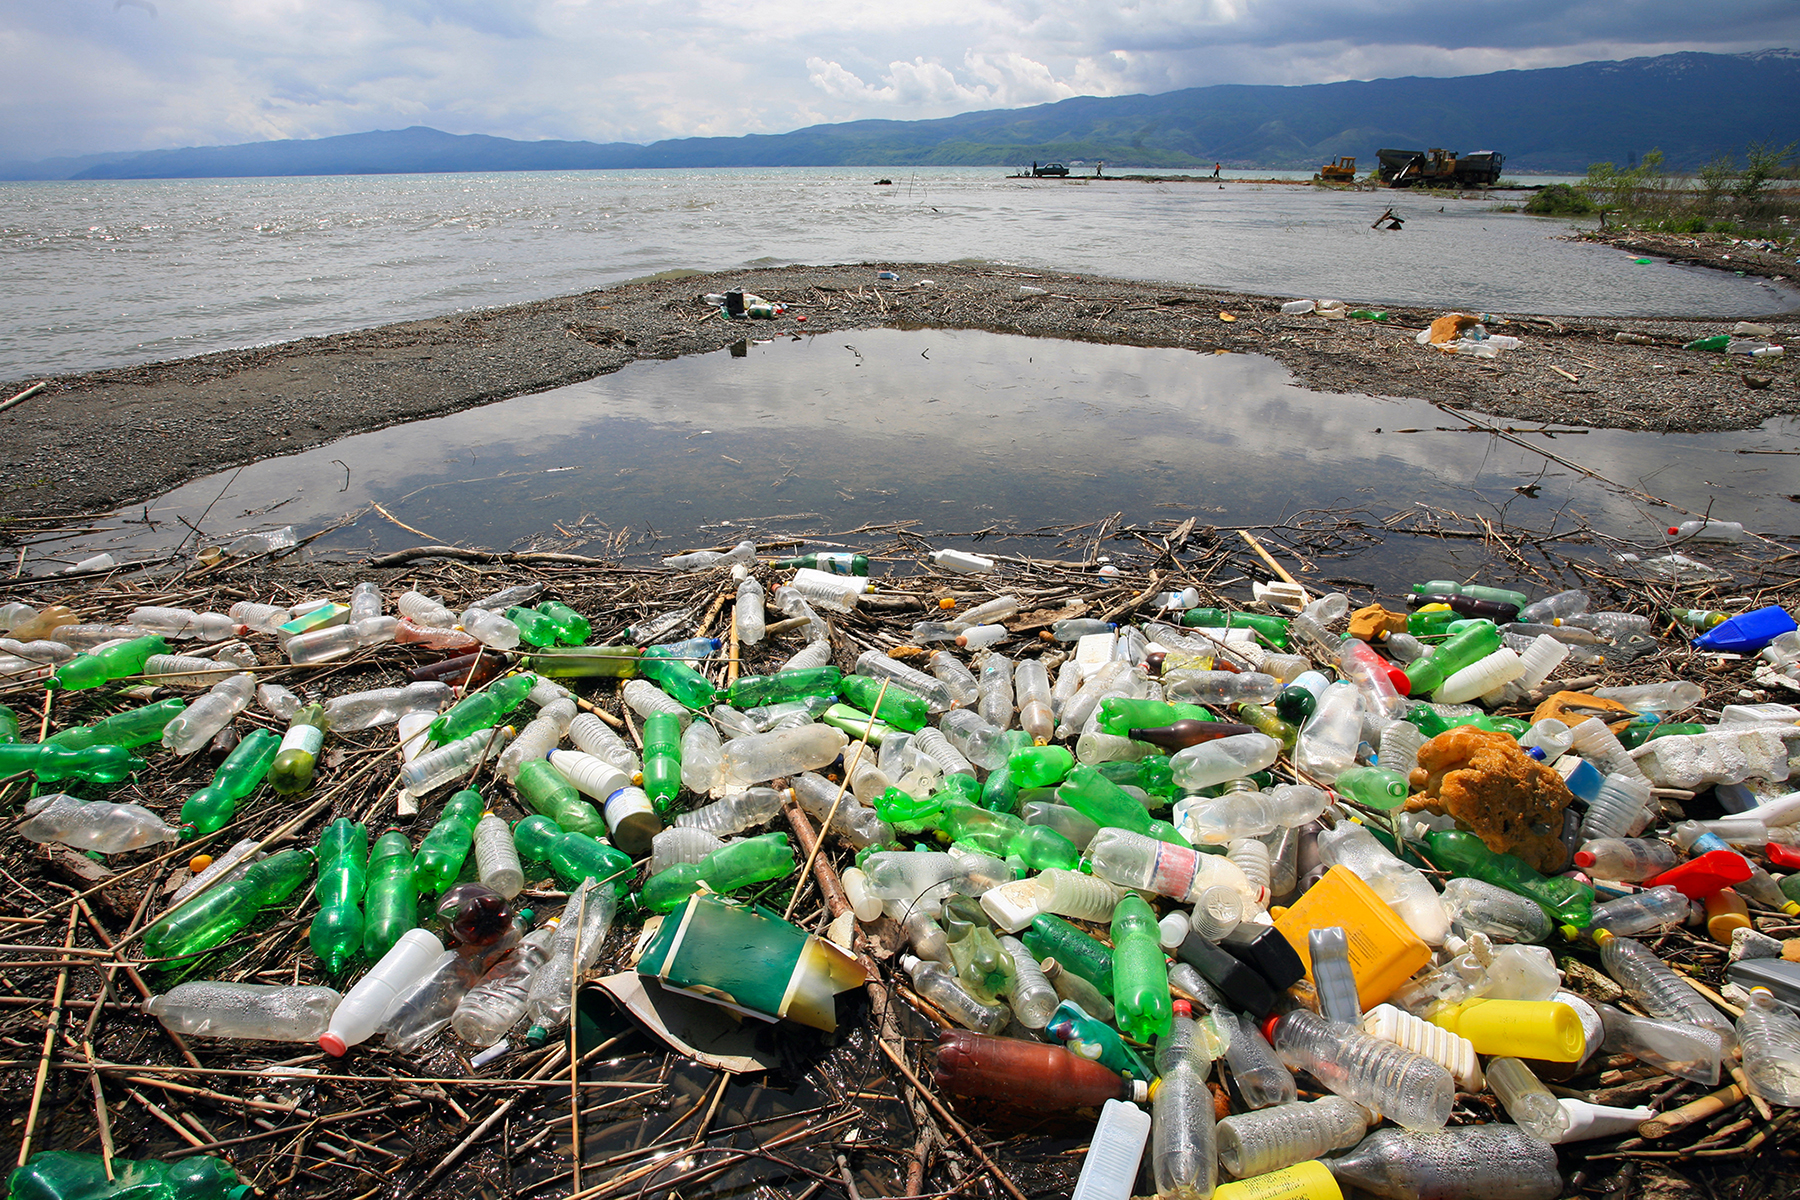  En México avanzan las políticas de prohibición de plásticos y un mayor cuidado al medio ambiente